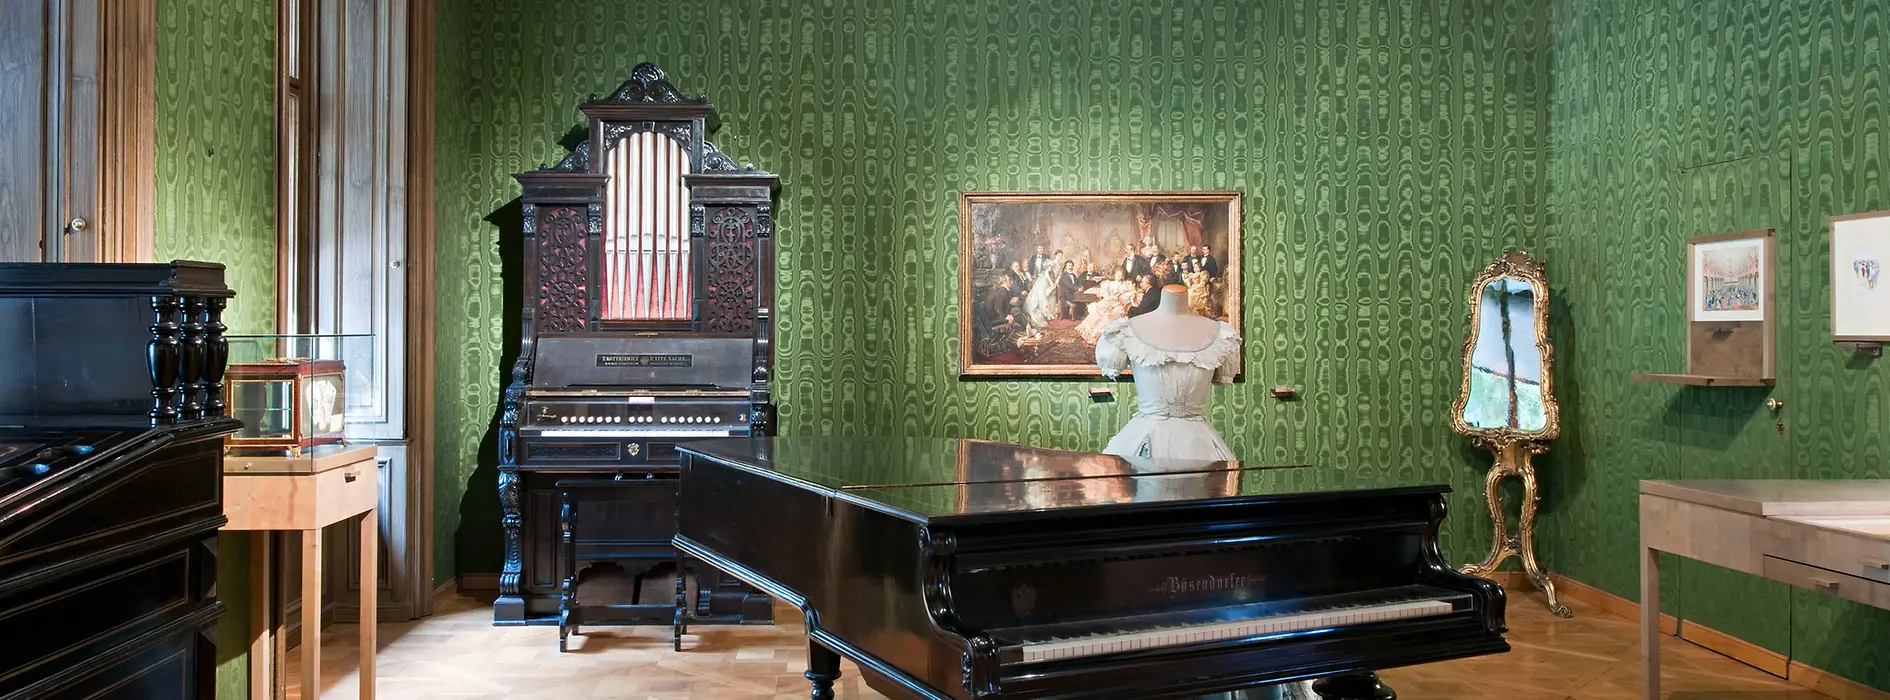 Johann Strauss Wohnung, grün tapezierter Raum mit Flügel, Orgel, Kleiderpuppe